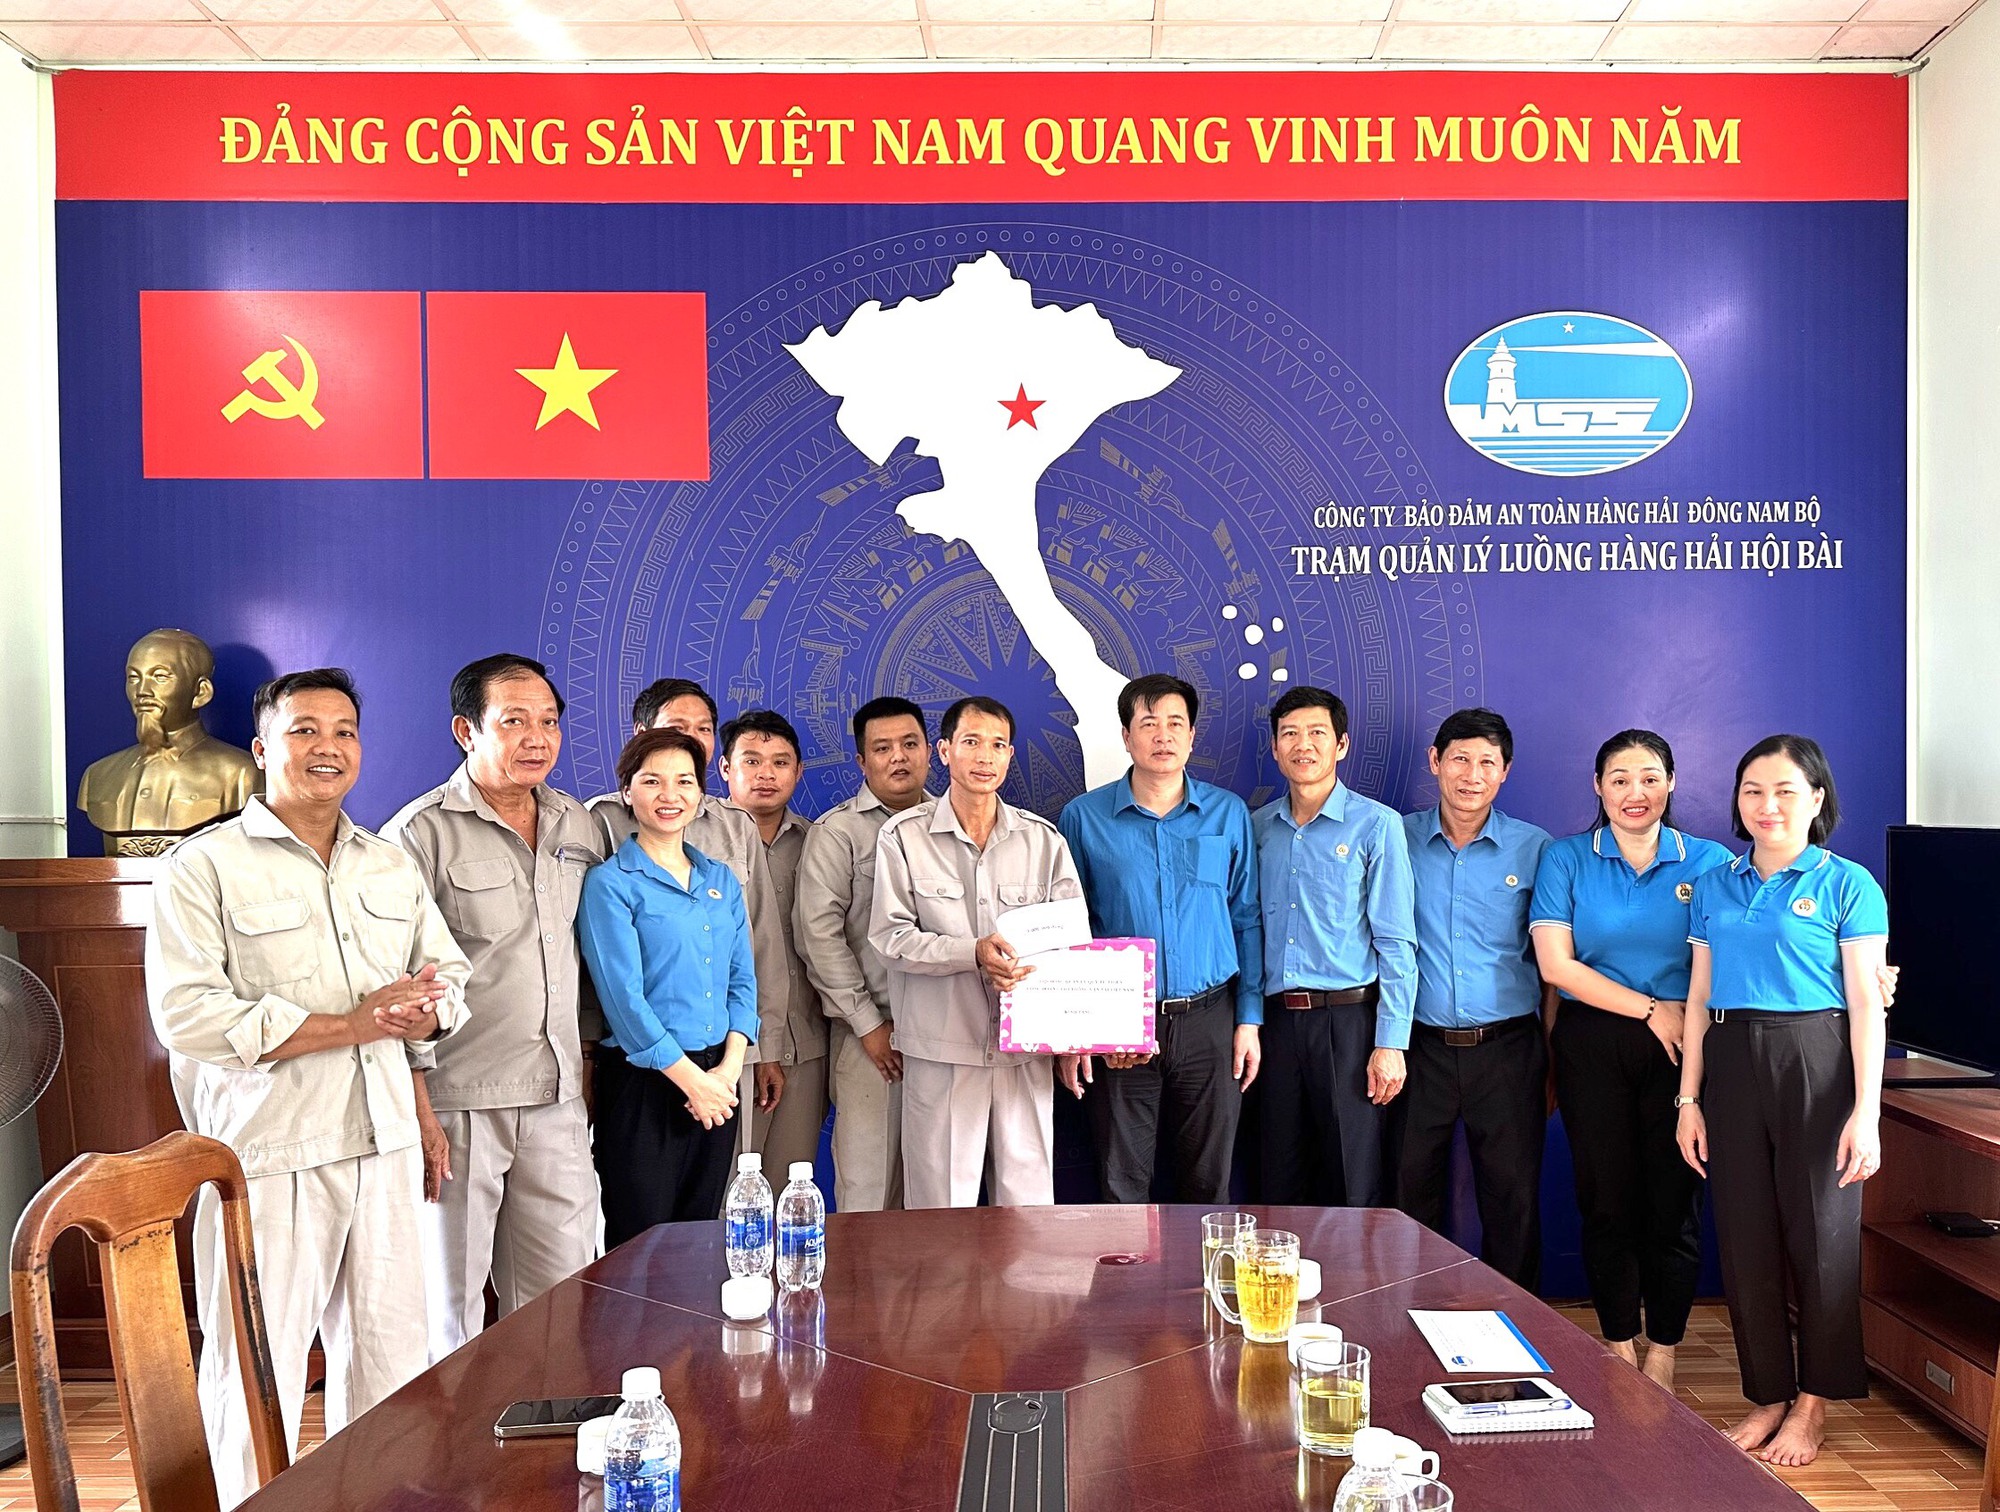 Công đoàn GTVT Việt Nam: Chăm lo chu đáo đời sống đoàn viên, chuẩn bị tốt Đại hội Công đoàn các cấp - Ảnh 1.